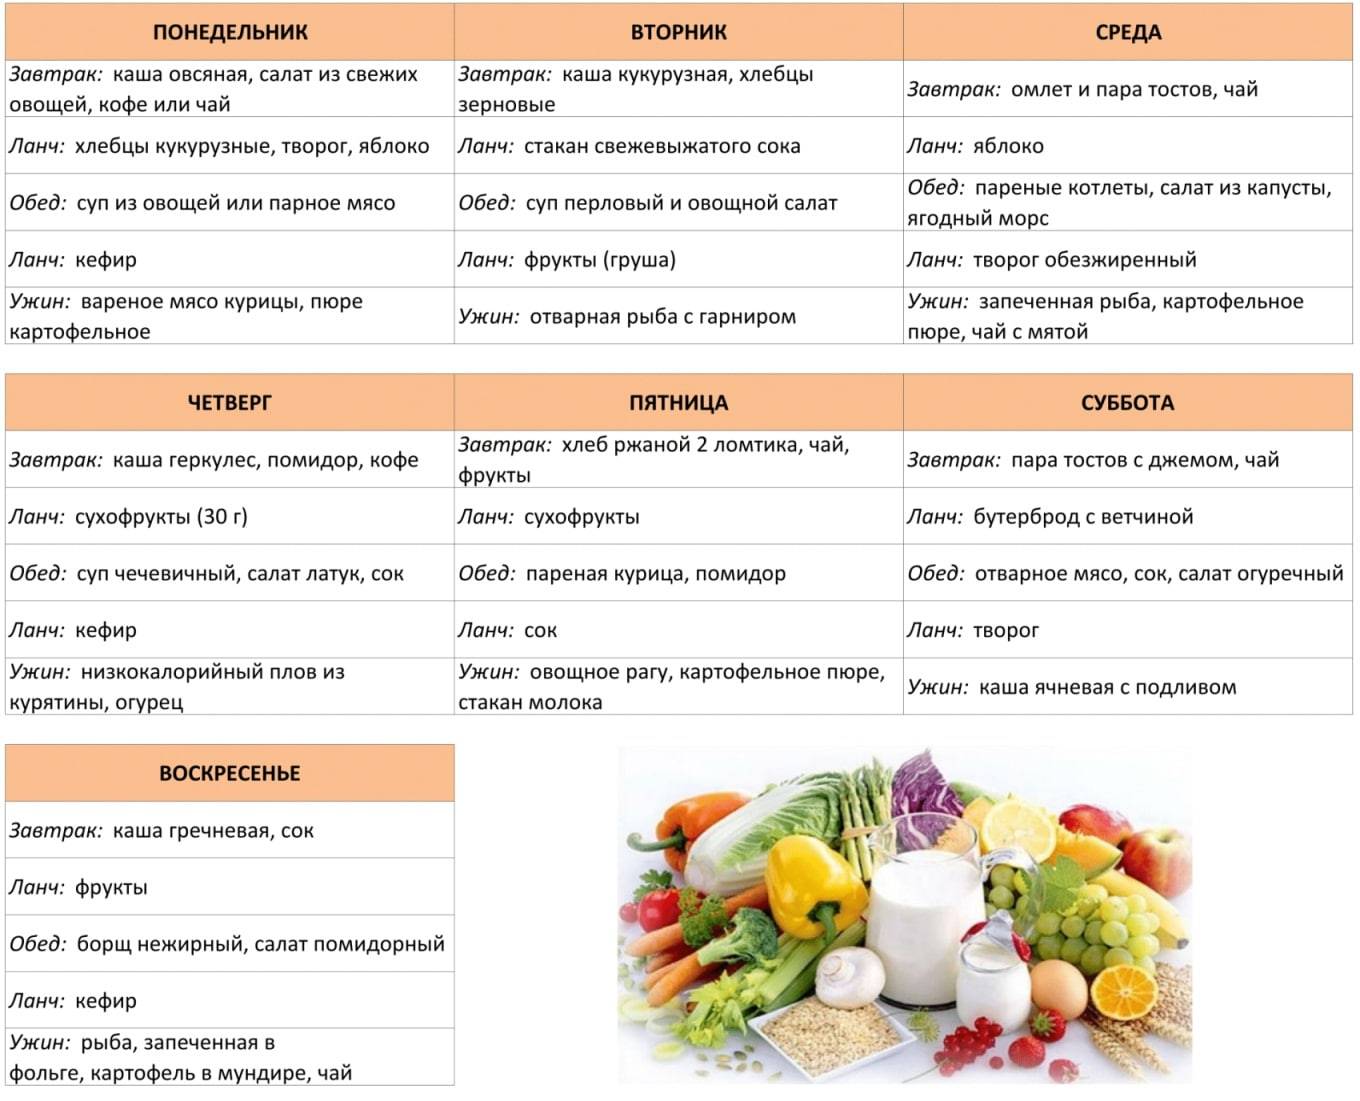 Правильная диета при инсулинорезистентности: примерное меню, перечень разрешенных и запрещенных продуктов